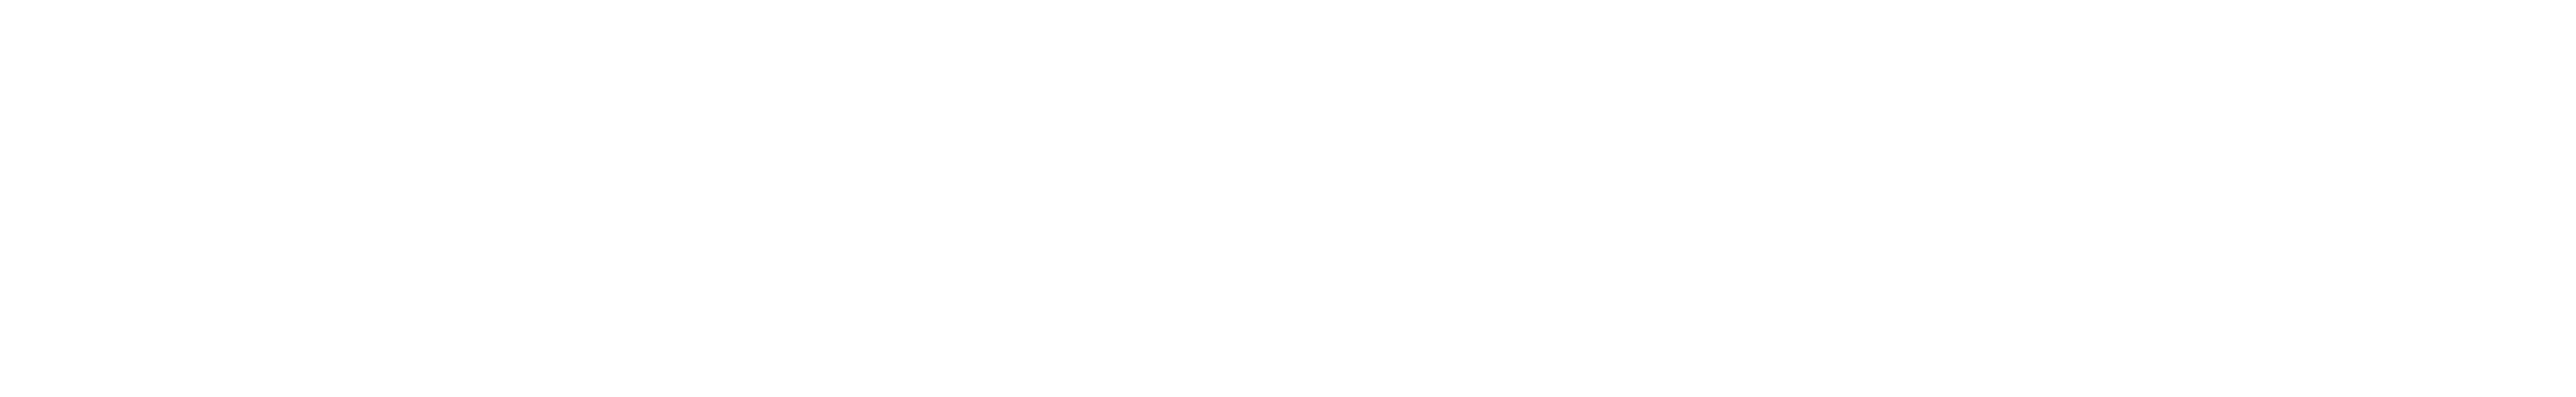 HRD Wellbeing Summit Australia Logo